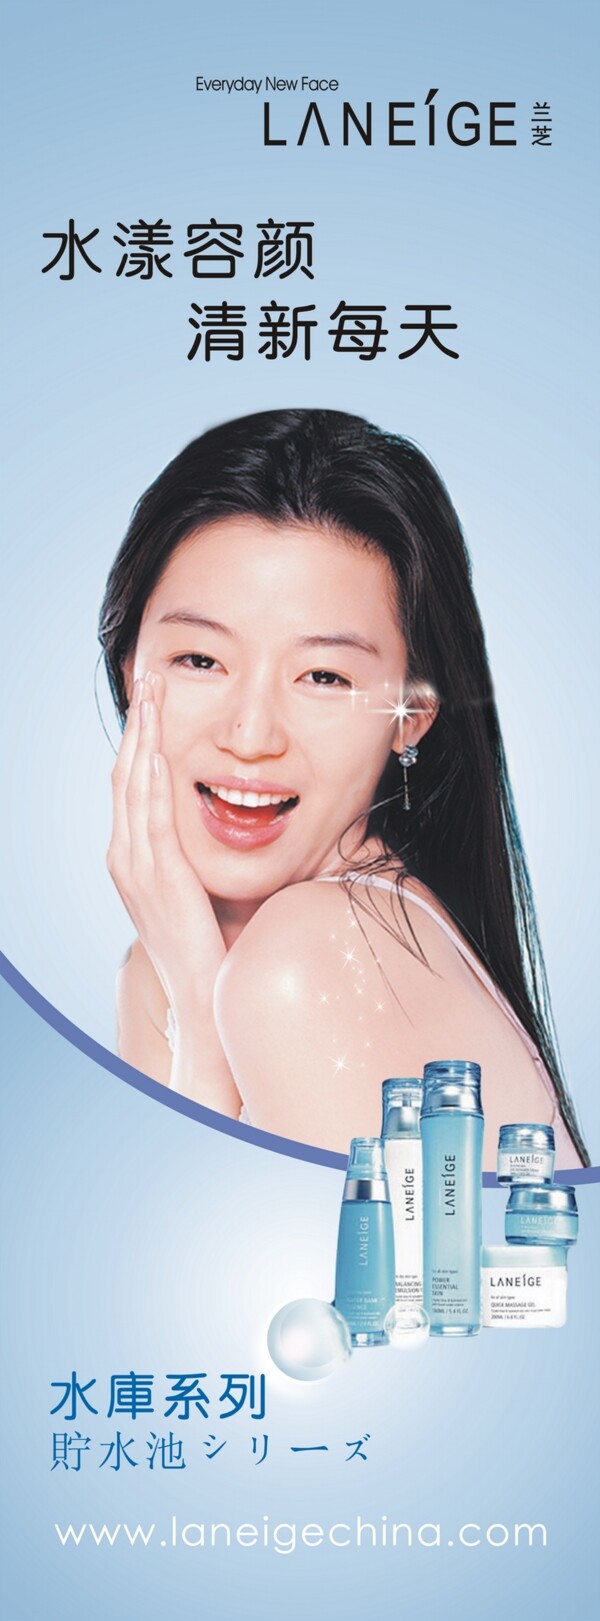 化妆品公司宣传单化妆品DM美容宣传单美容DM袁咏仪完美丸美广告